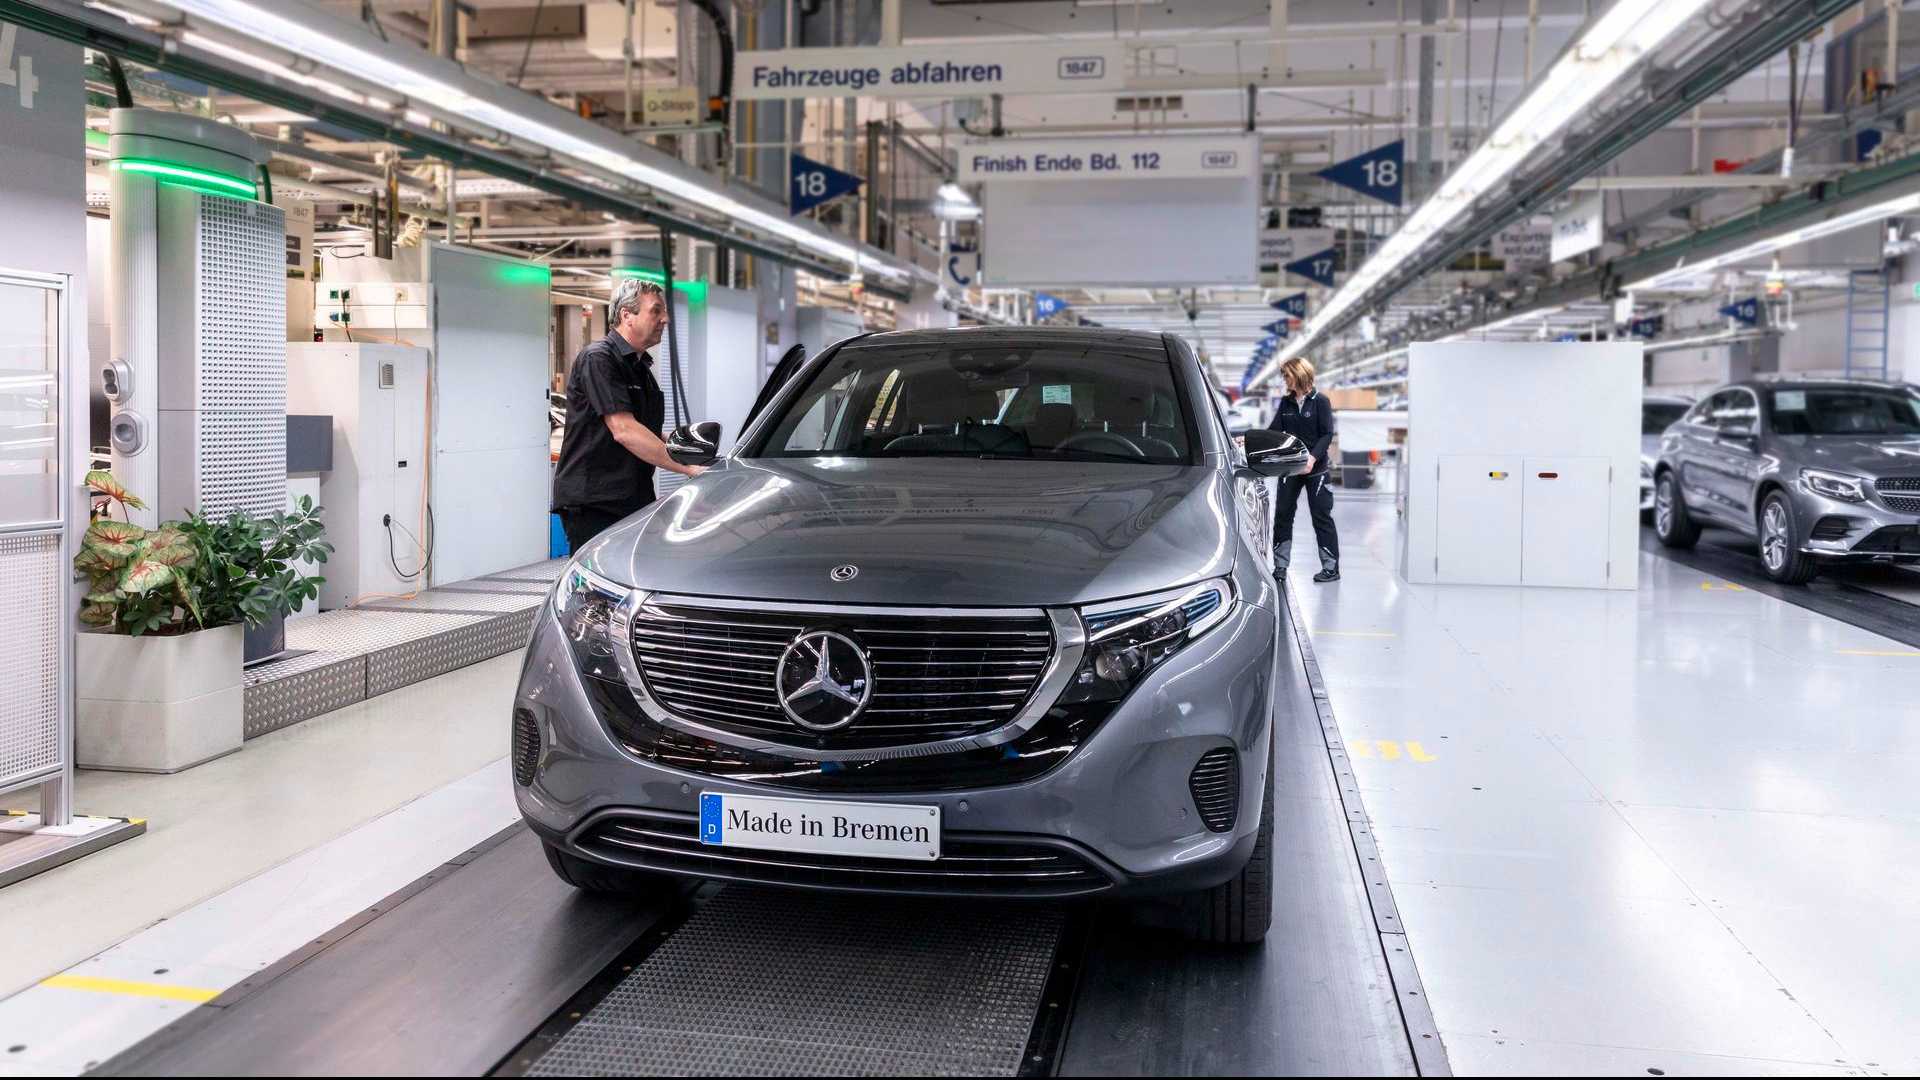 Как купить автомобиль из германии в 2021 году?